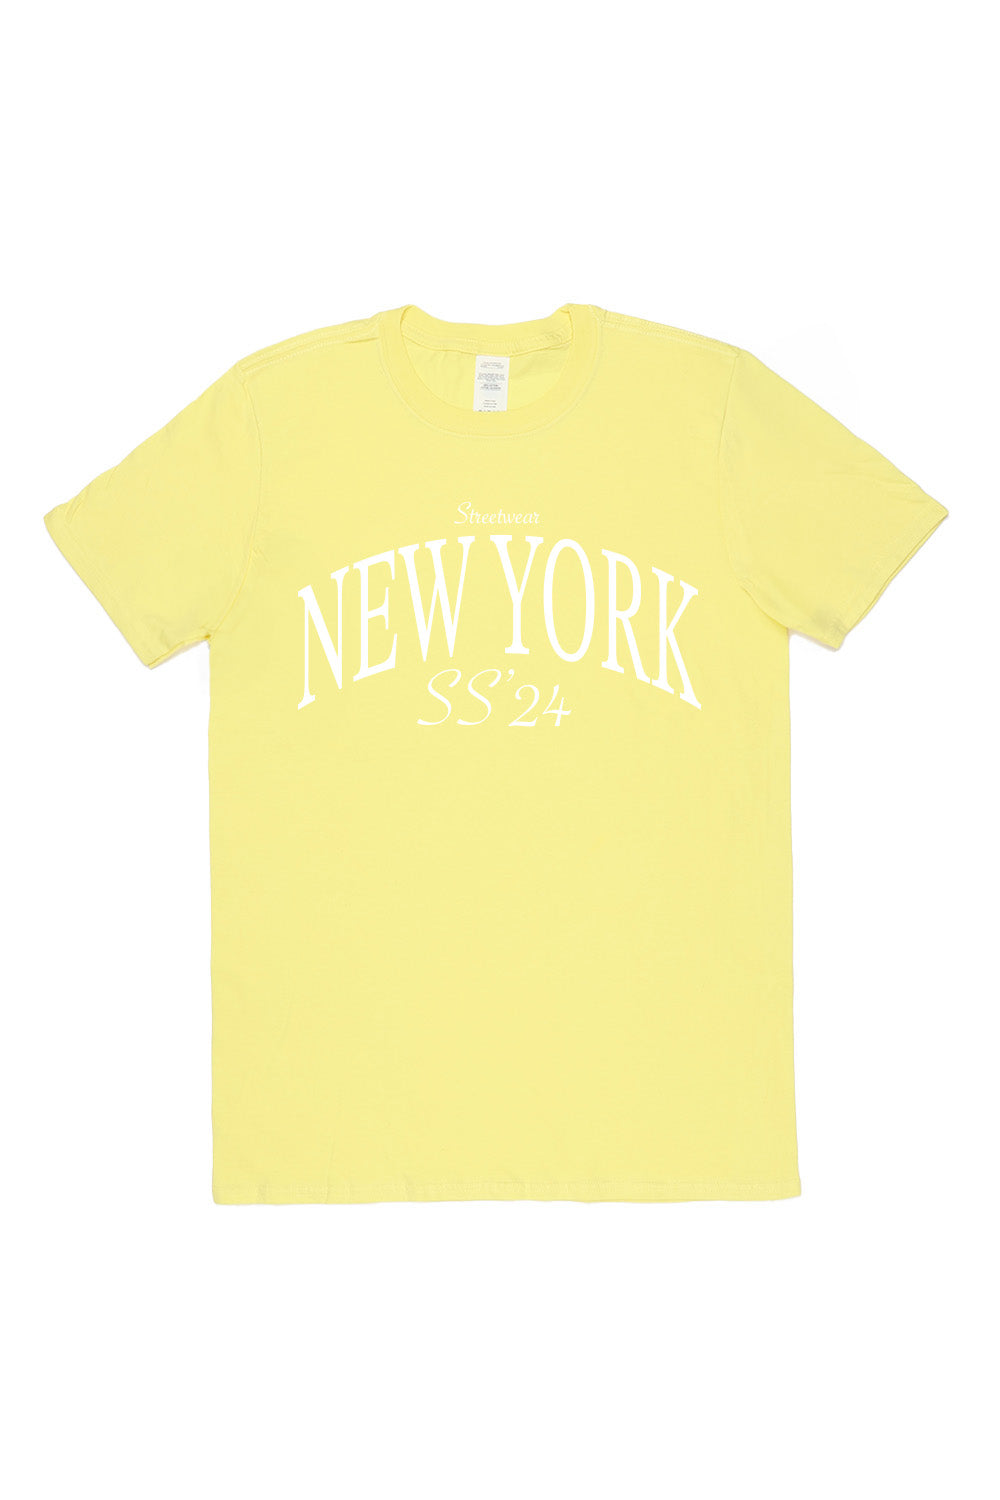 New York T-Shirt in Yellow (Custom Packs)